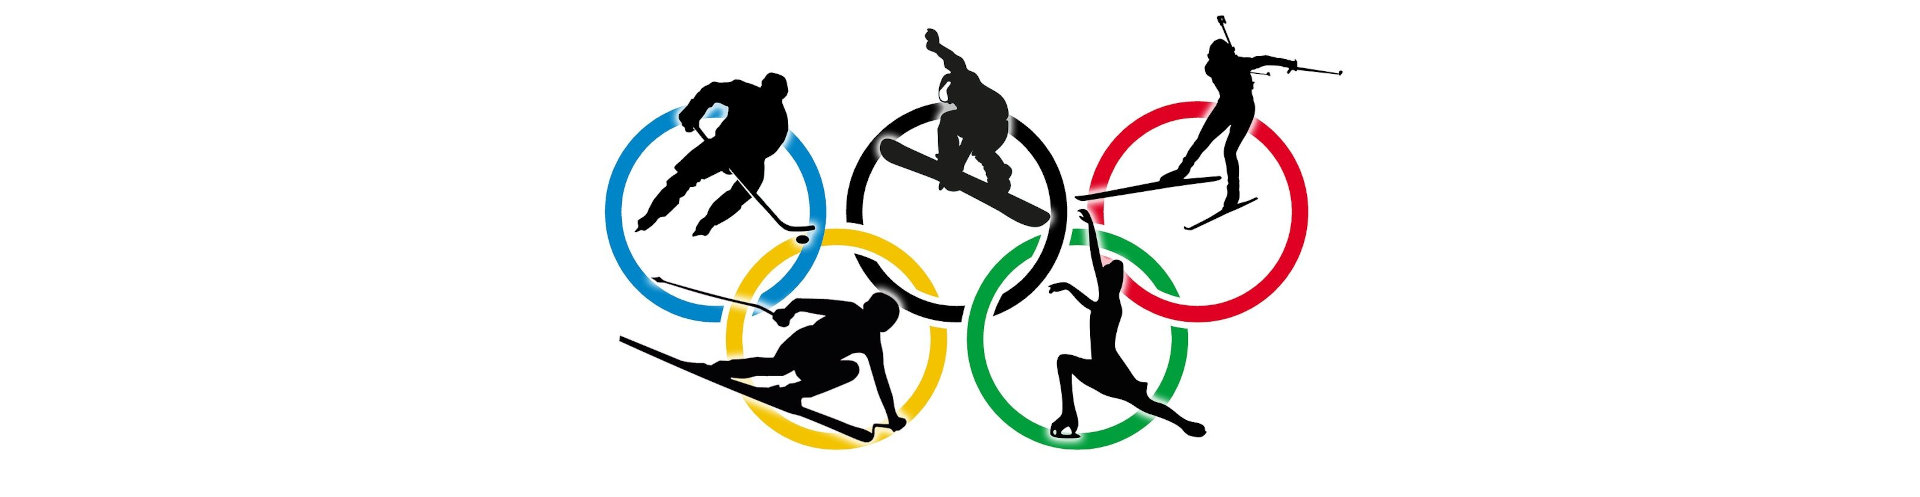 Historia zimowych igrzysk olimpijskich